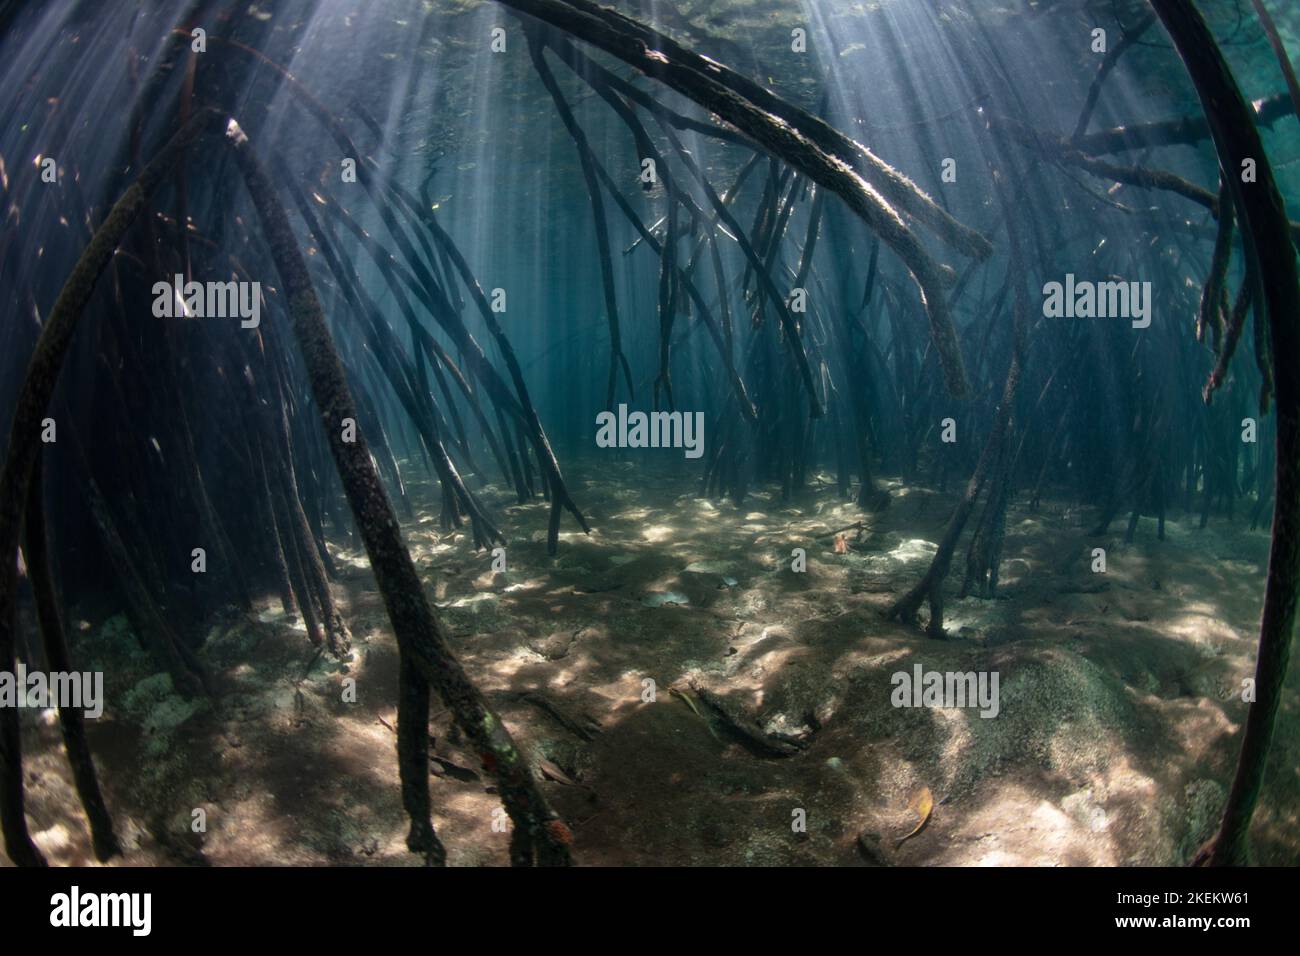 In einem gesunden indonesischen Mangrovenwald tauchen rote Mangrovenwurzeln in schattiges Wasser ab. Mangroven sind ein wichtiger Lebensraum für viele Wasserarten. Stockfoto